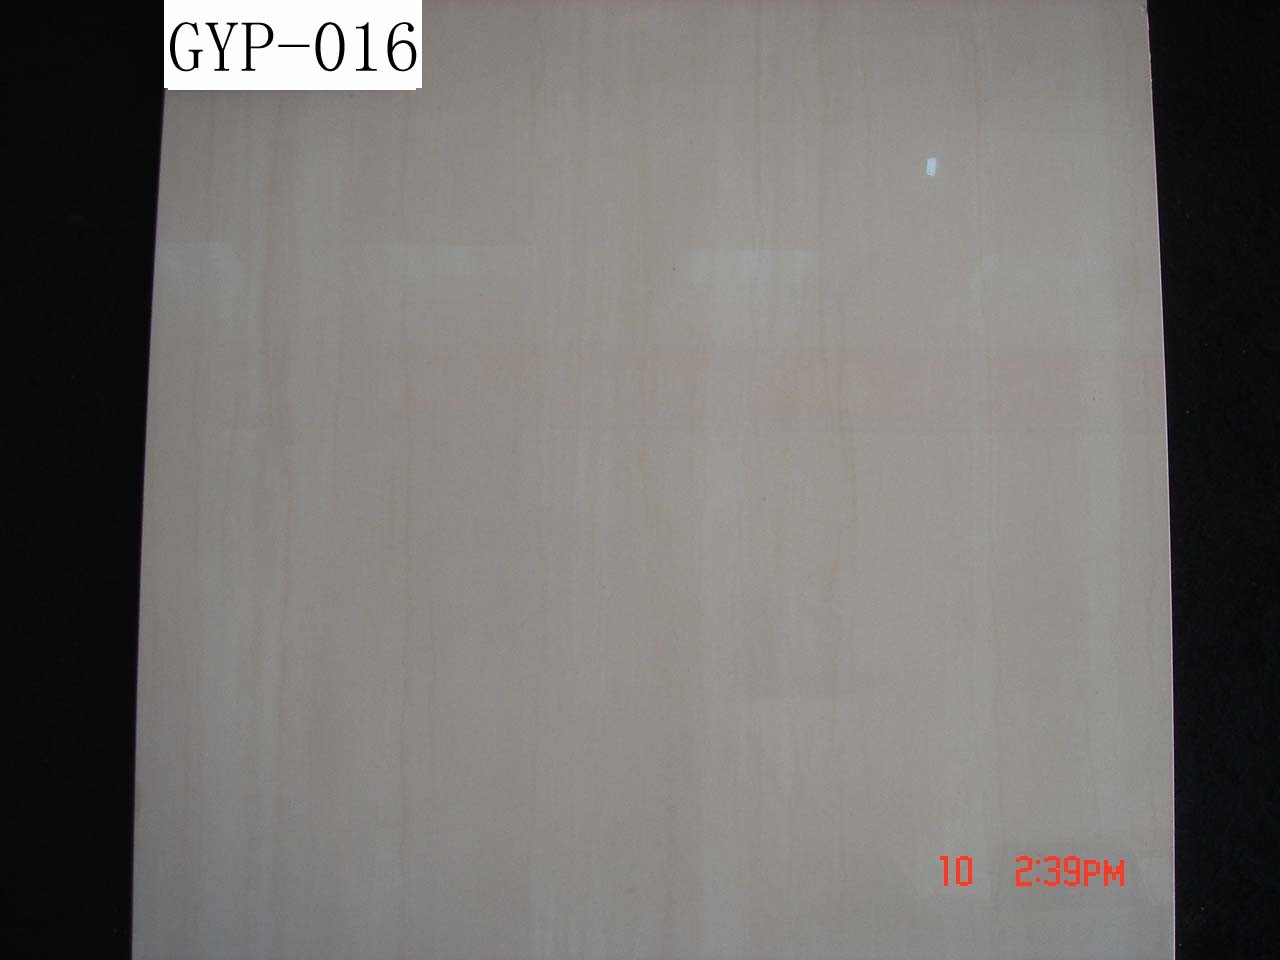 High quality soluble salt tiles GYP-016